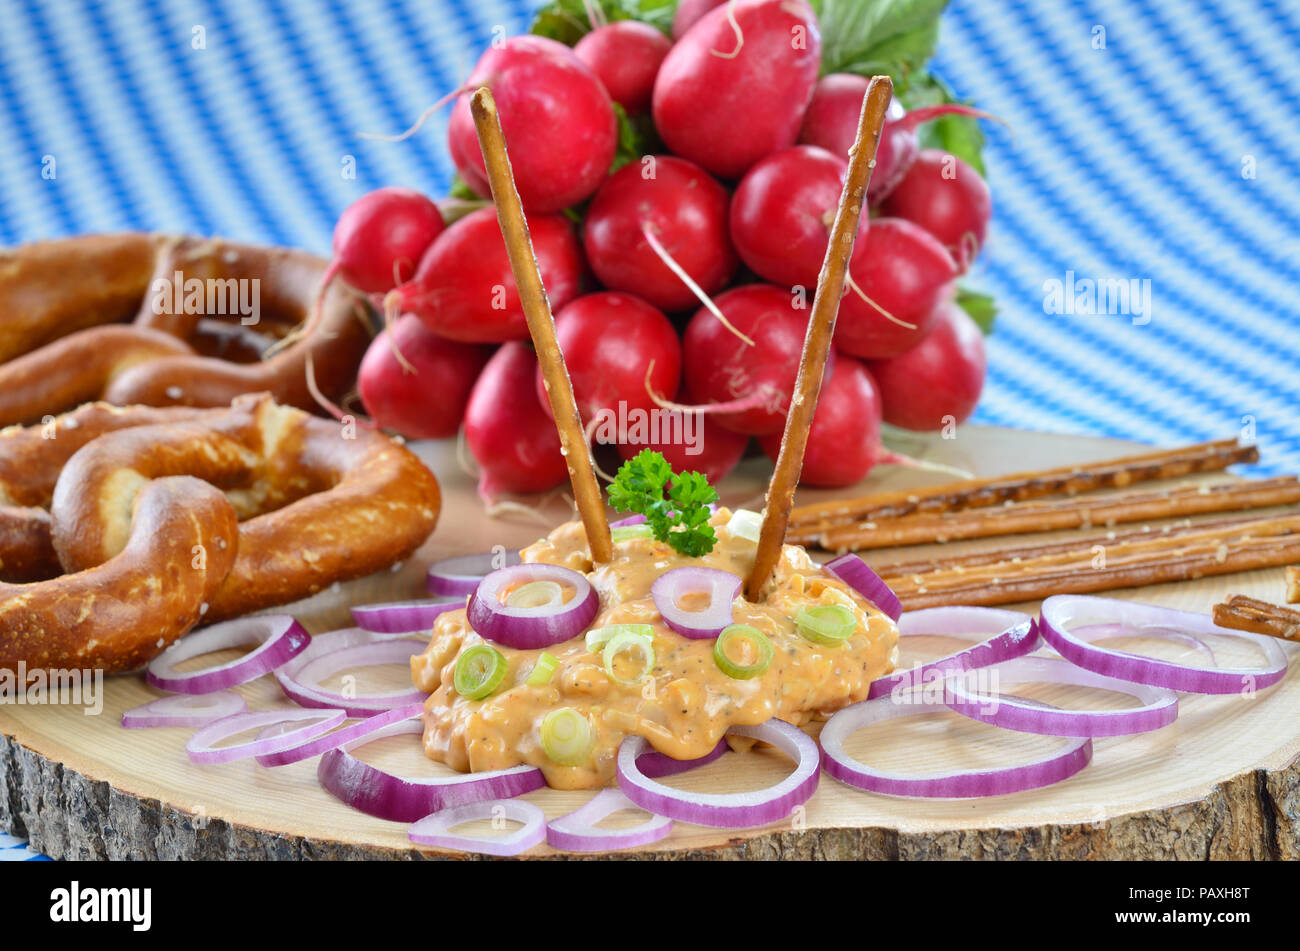 Bayerische Käsespezialität "obazda", serviert mit Zwiebelringen, Brezeln und Radieschen auf einem hölzernen Platte Stockfoto